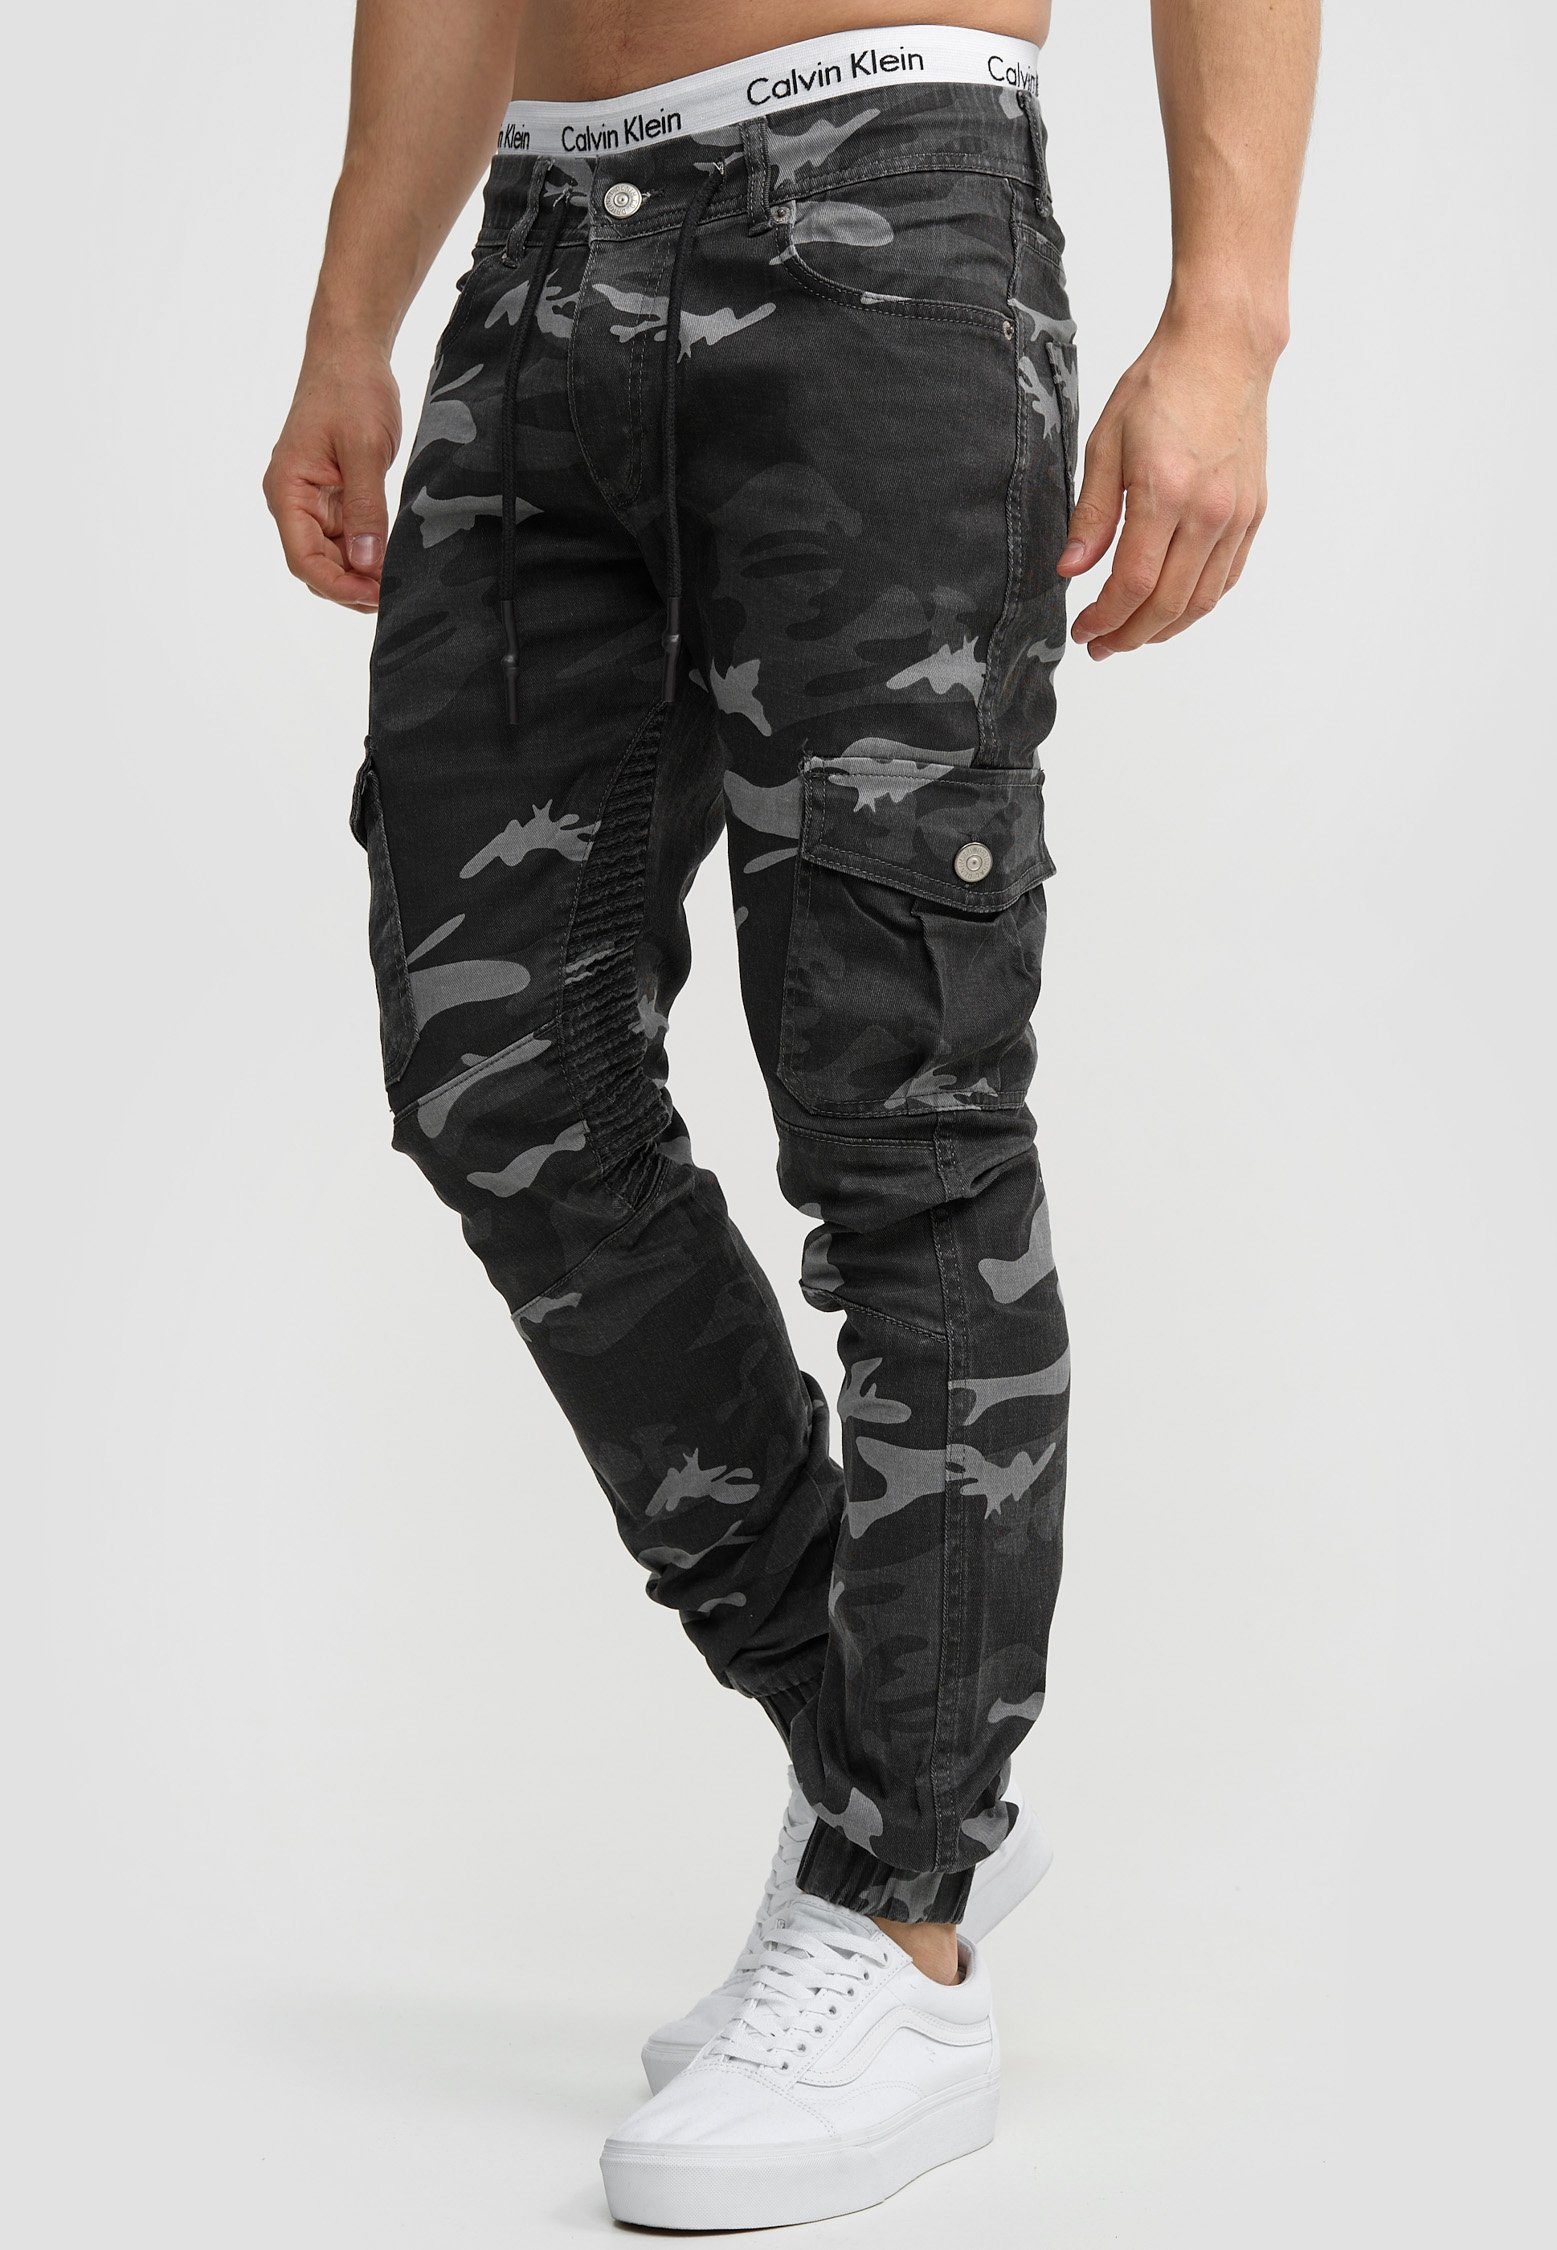 Schwarz 3207C Fit Herren Chino Slim-fit-Jeans Camouflage Jeans Hose Slim Code47 Männer Designer Chinohose Slim